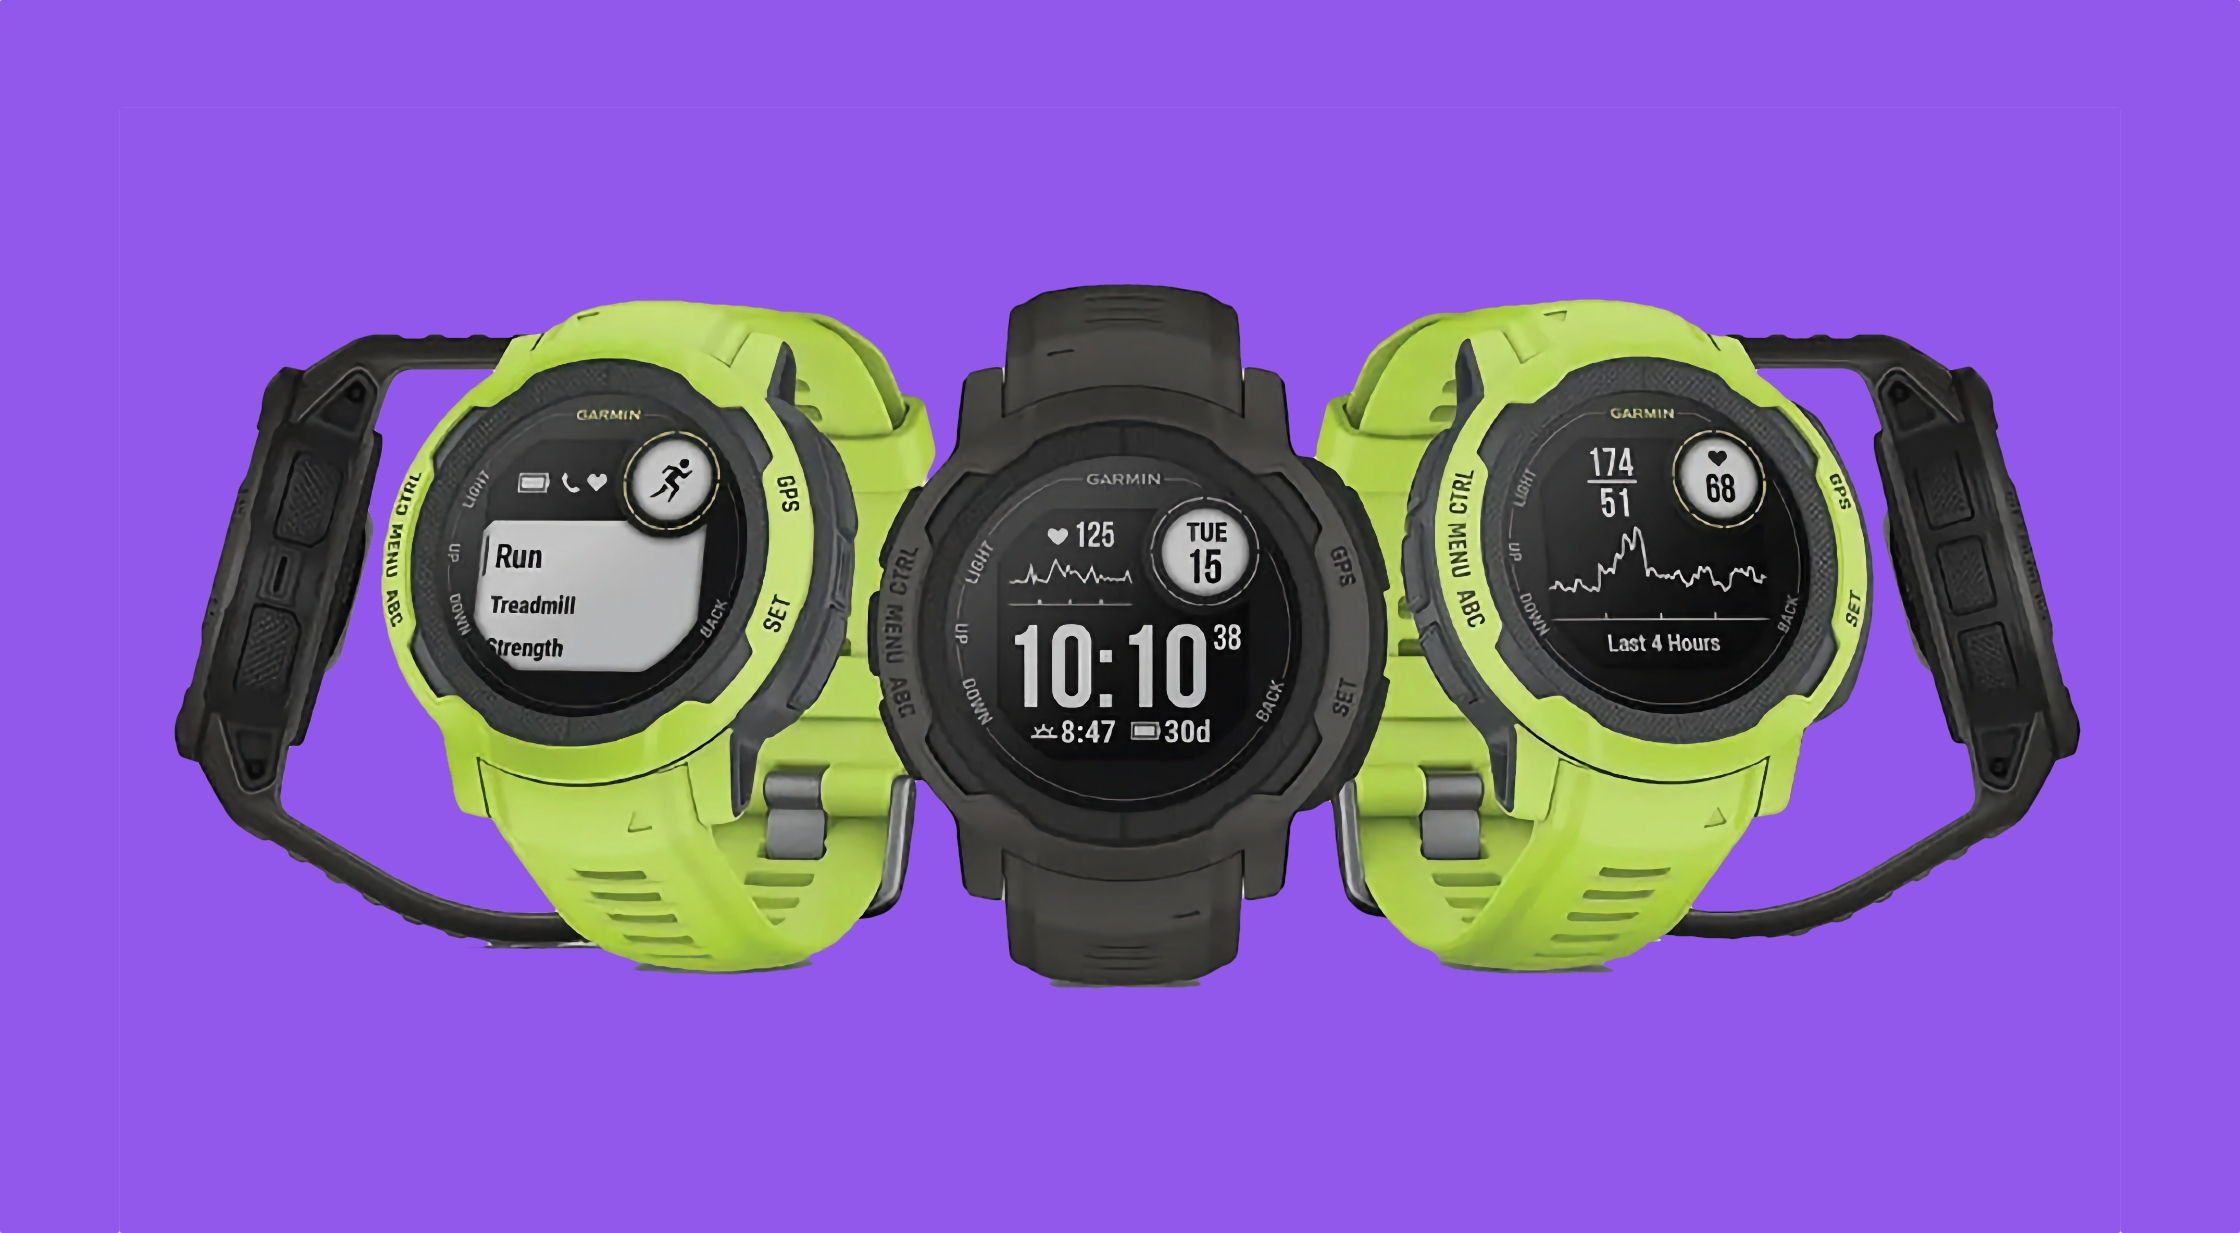 Smartwatch sportivo Garmin in vendita su Amazon con sconti fino a 192 dollari